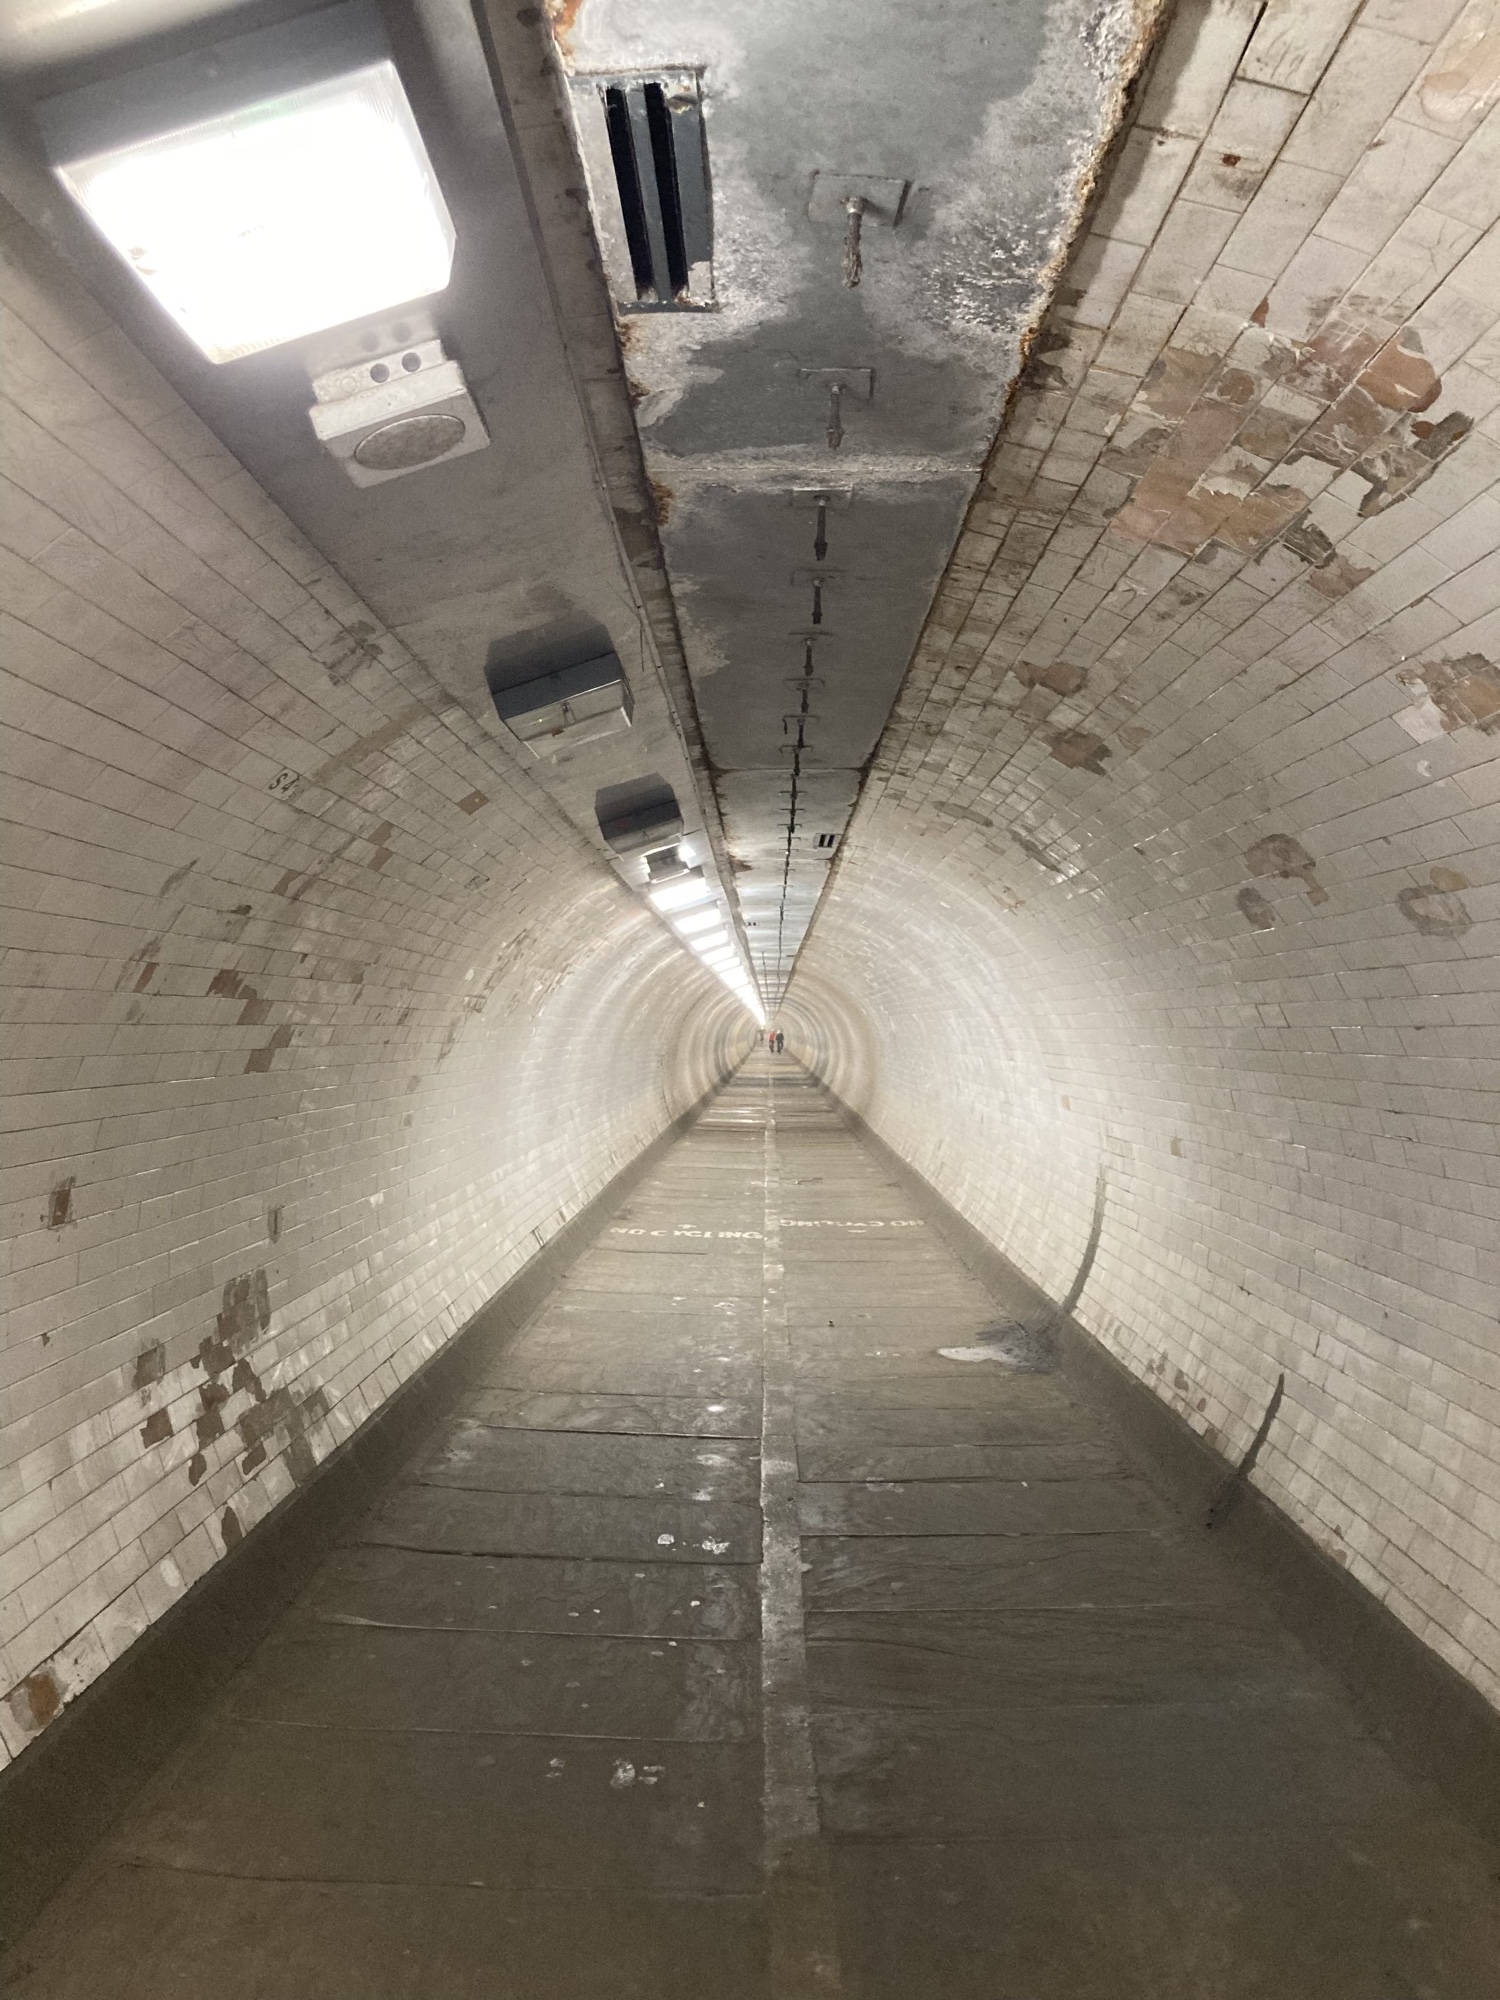 Tunnelblick in den Greenwich Foot Tunnel, der Boden besteht aus rechteckigen grauen Steinen, die Wände der Tunnelröhre sind mit weißen Fliesen ausgekleidet, die an vielen Stellen deutliche Abnutzungserscheinungen aufweisen